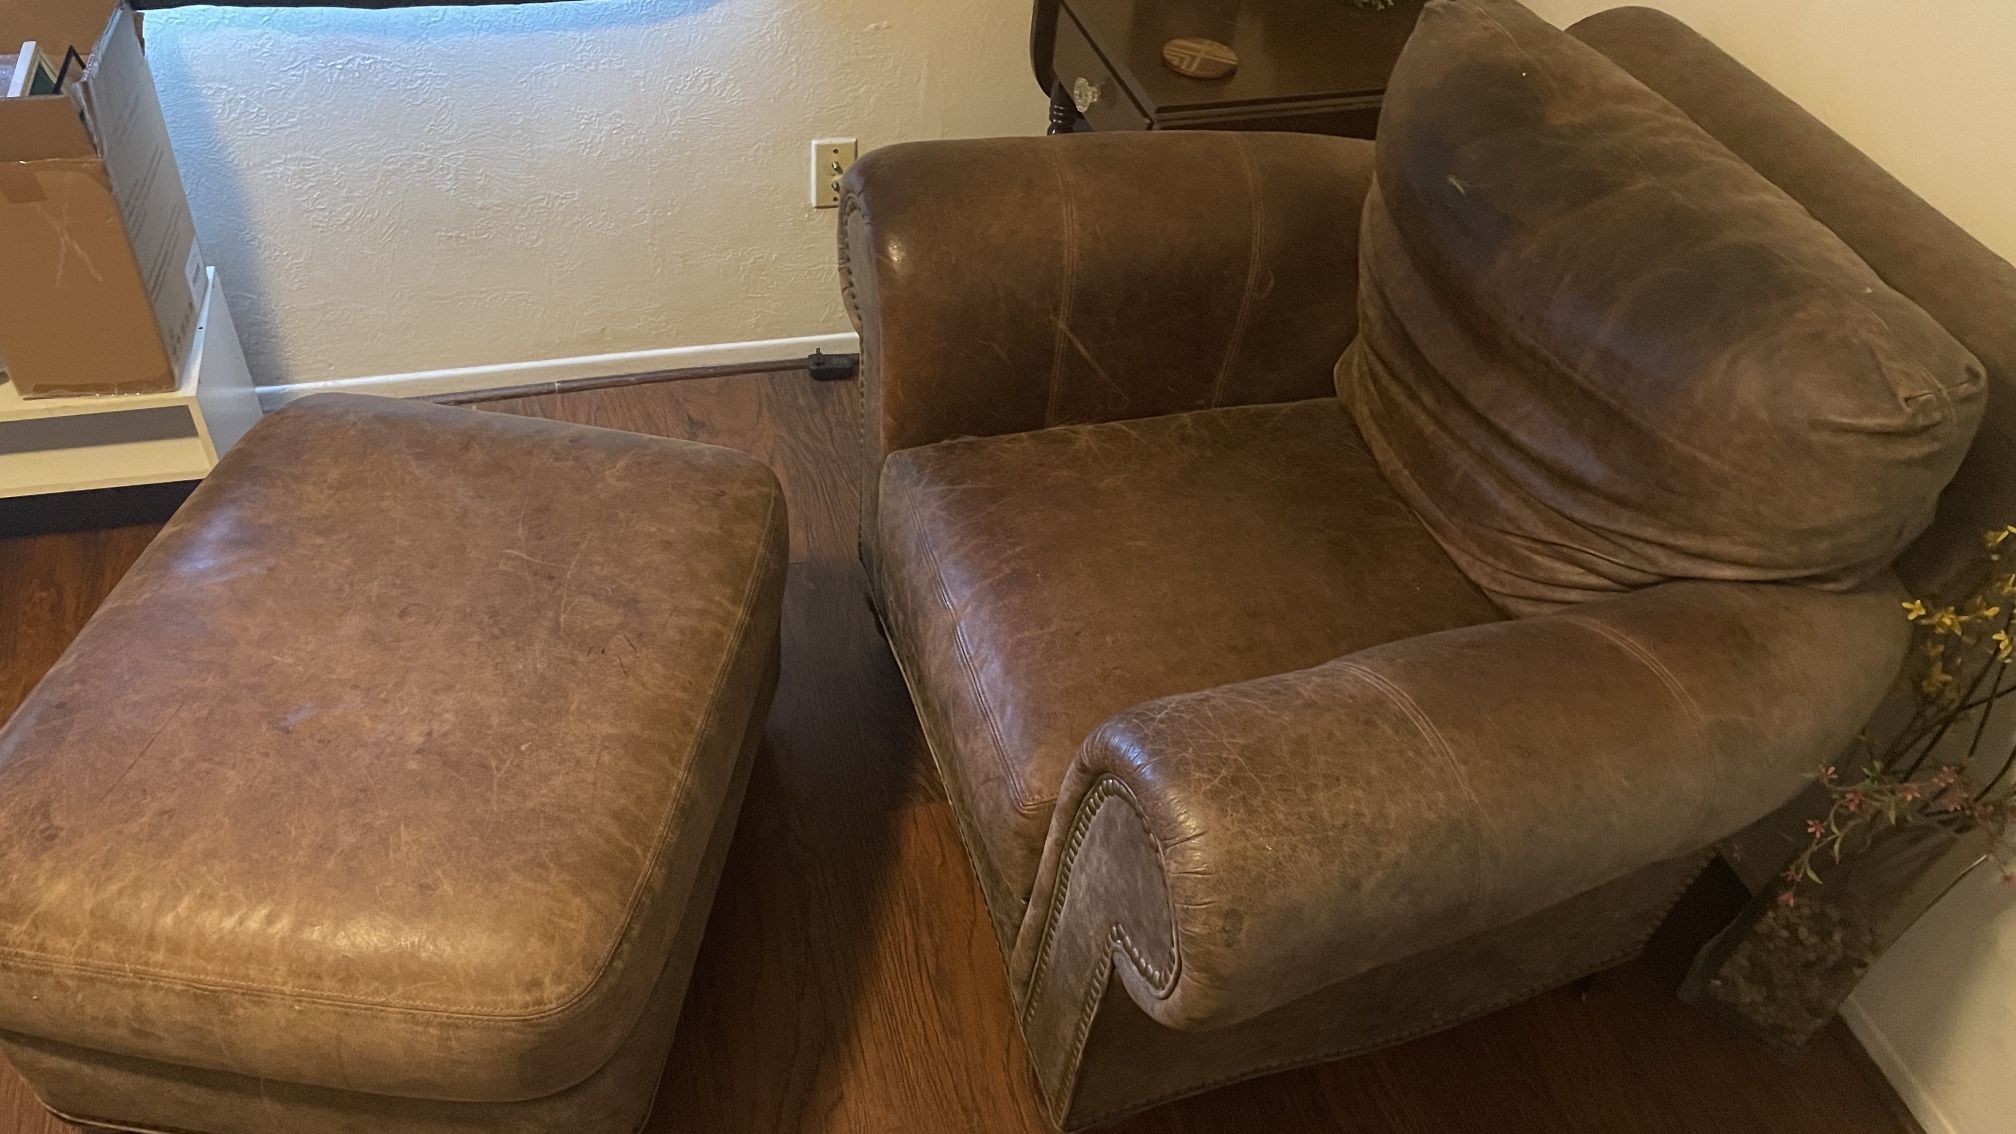 Sofa Chair And Ottoman 